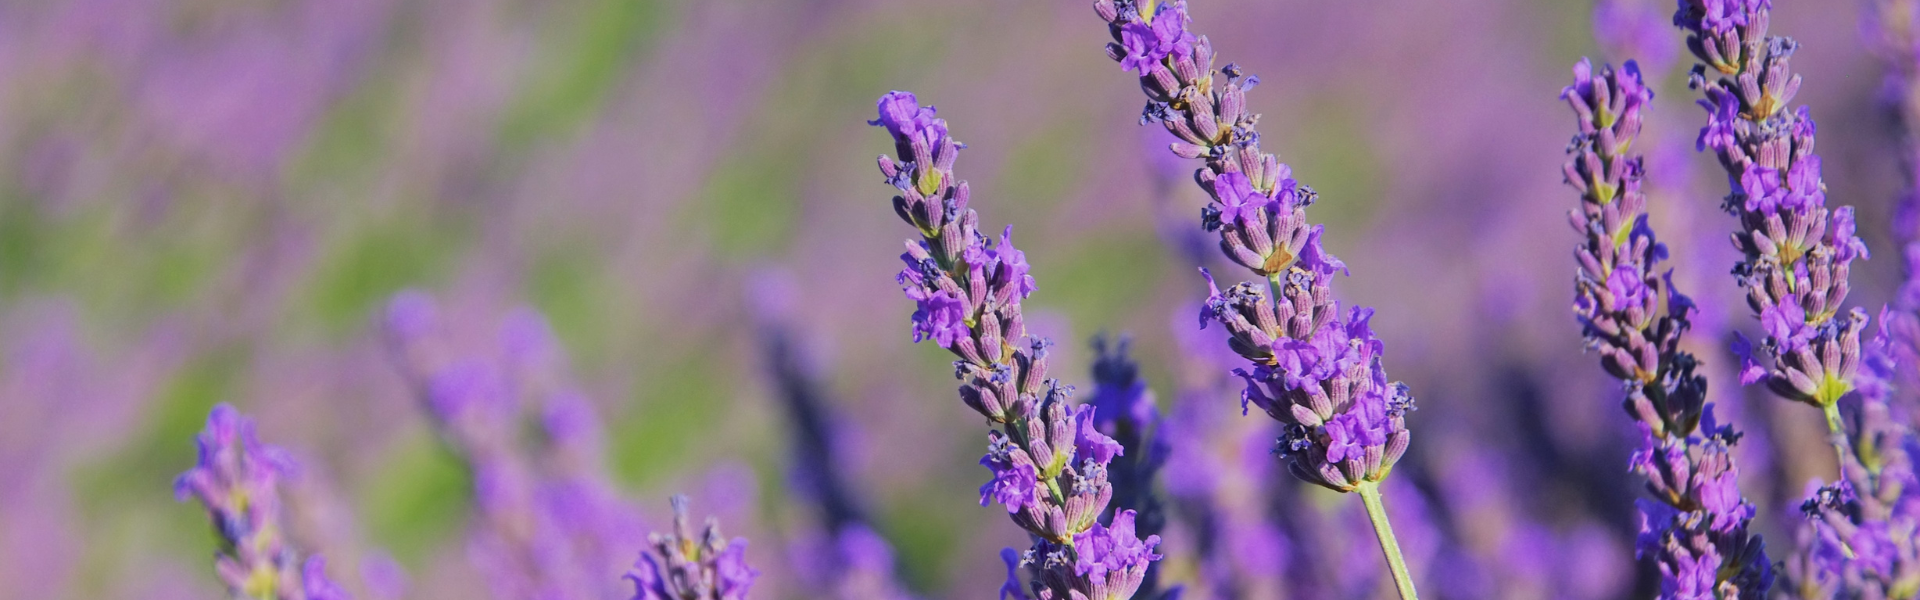 Linalool Terpene - Lavender